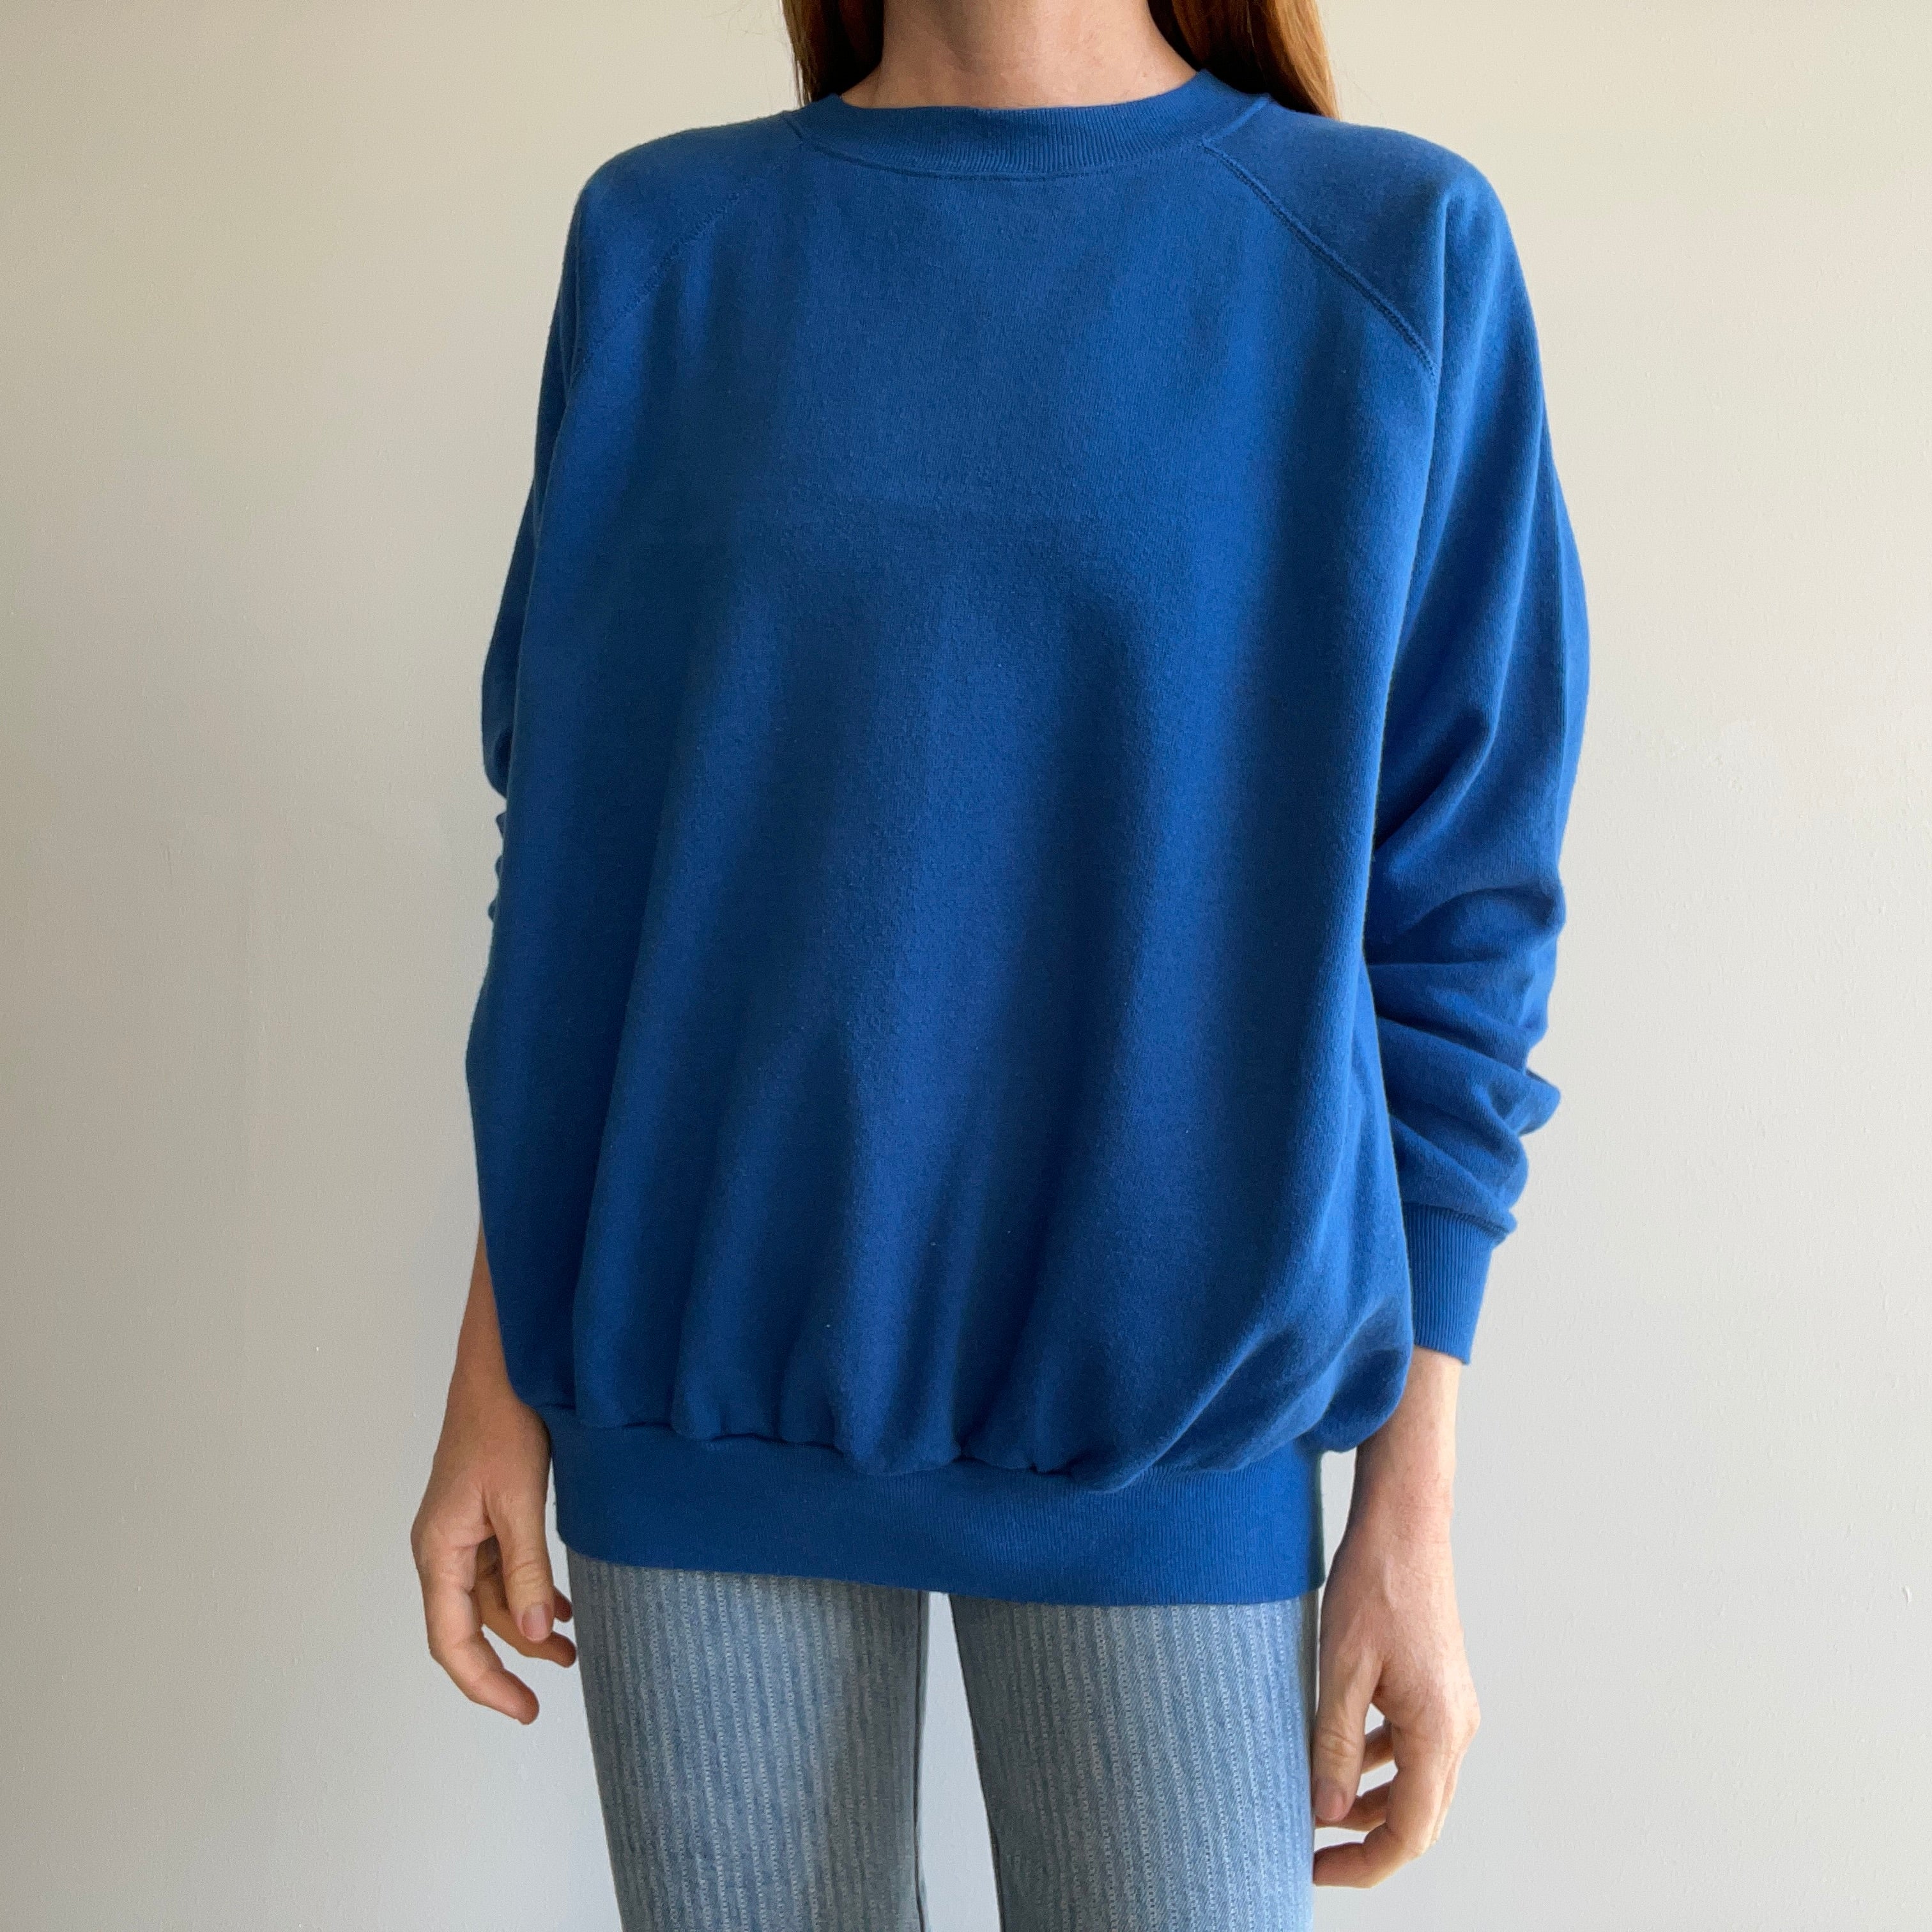 1980s Blank Blue Sweatshirt